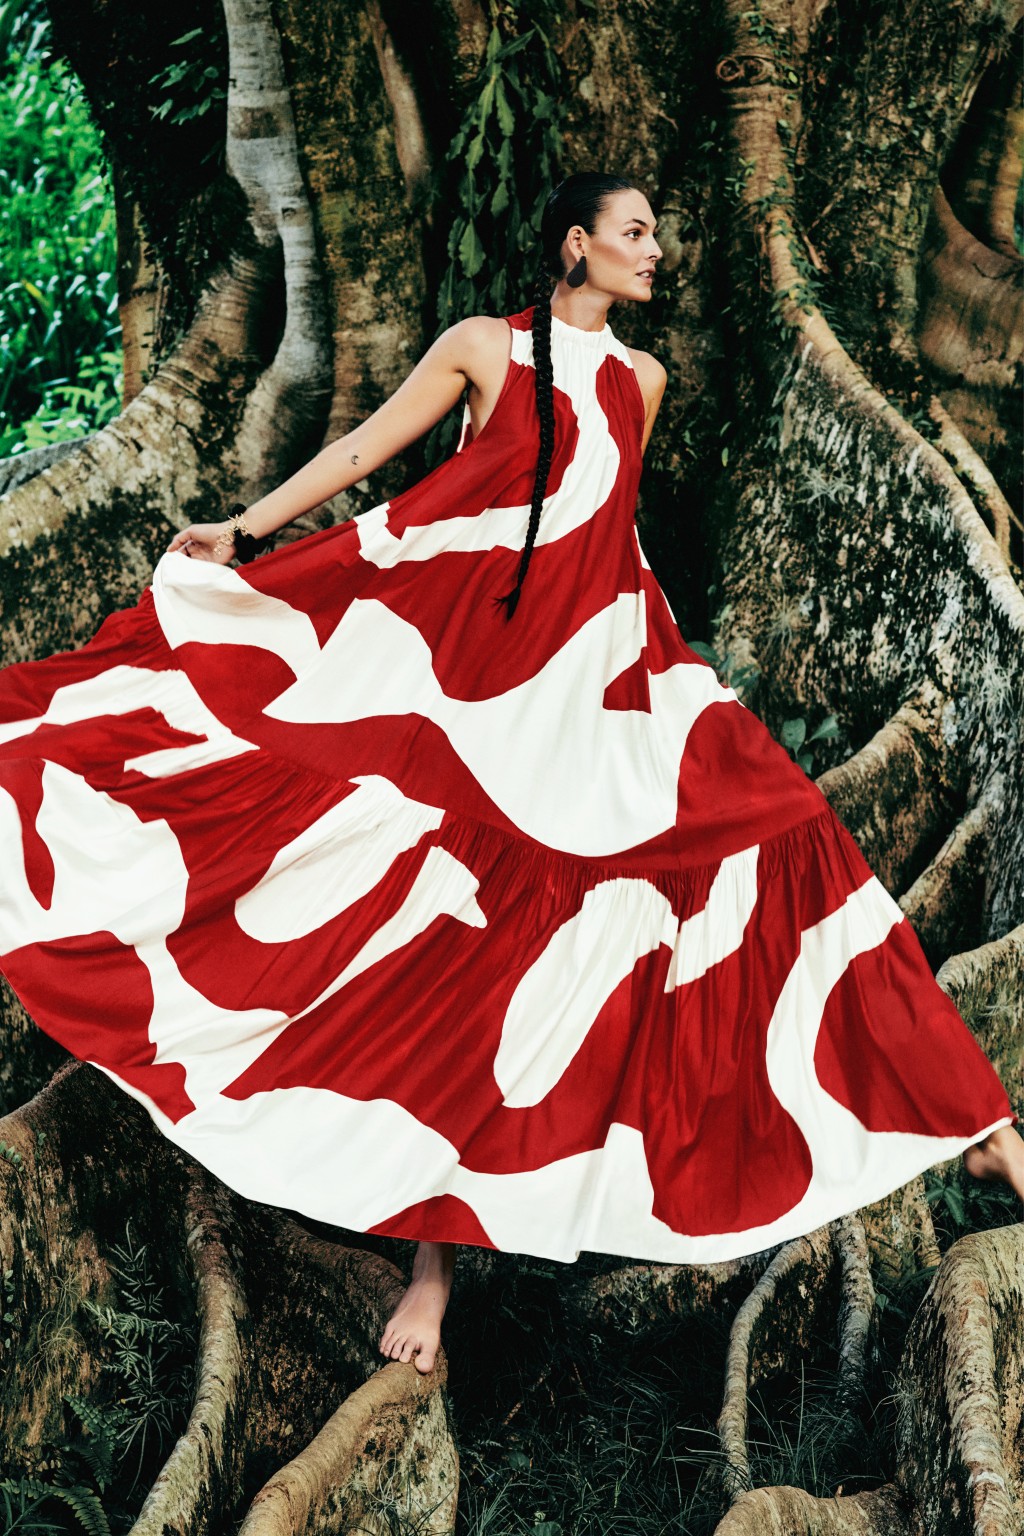 H&M夏季女装系列新 品主要采用抢眼对比色及印花，展现巴西现代主义运动的精髓/售价待定。